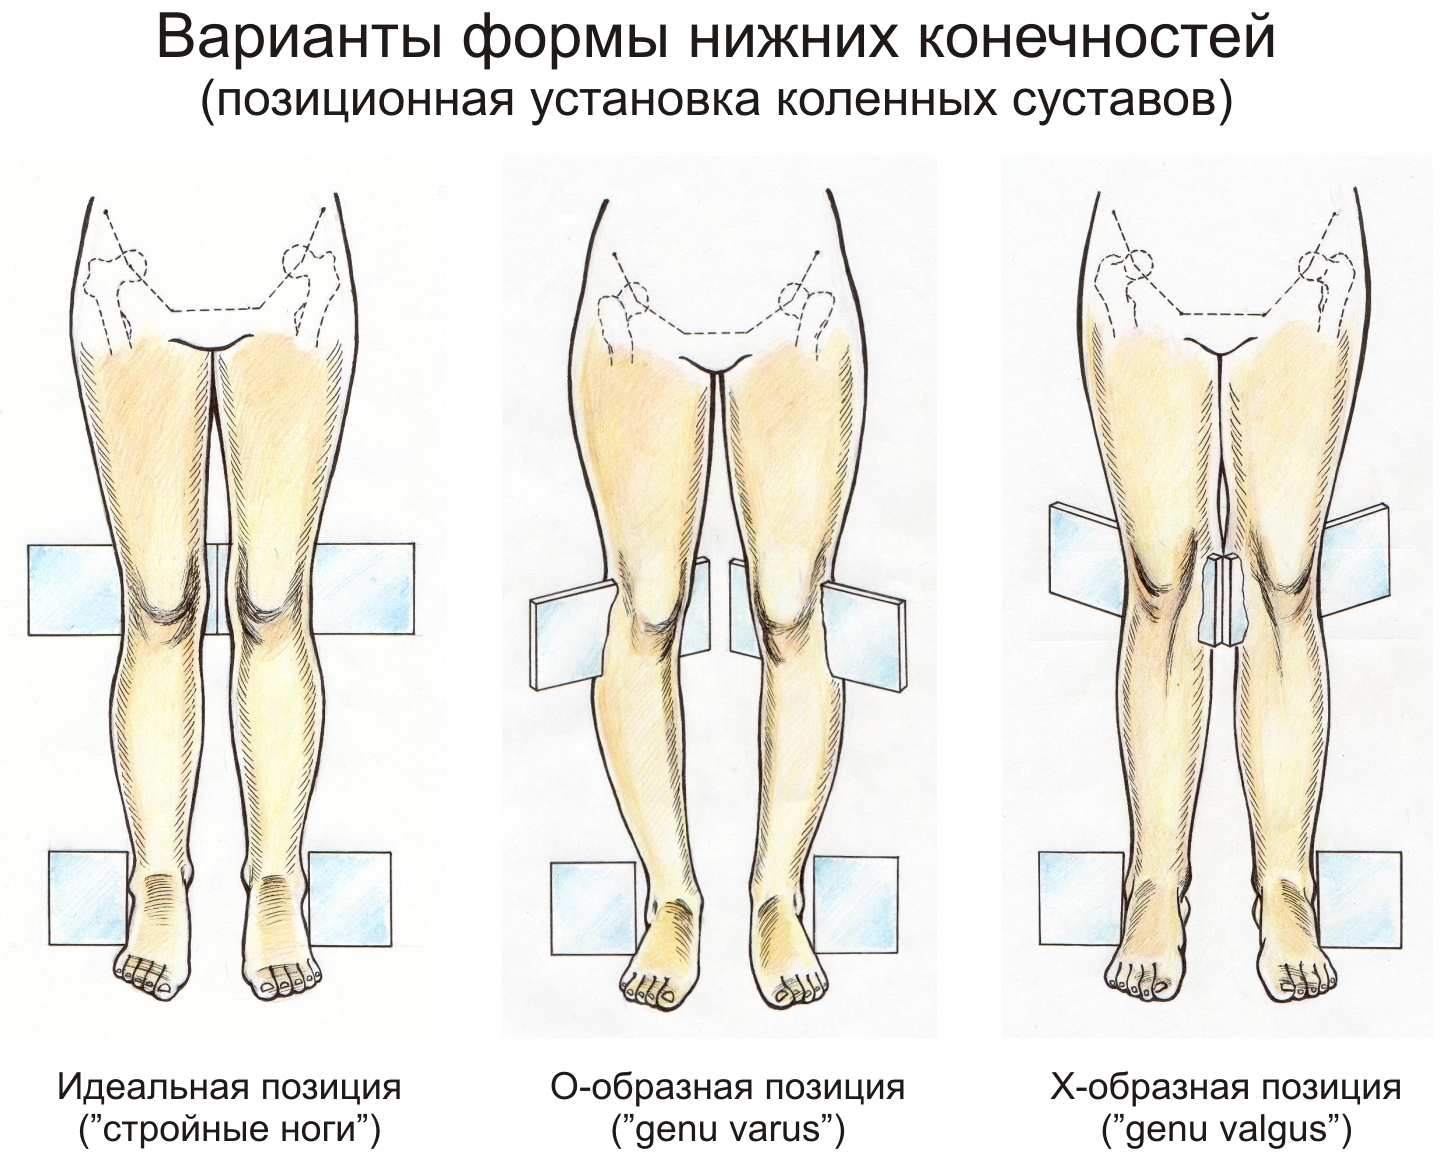 позиционная установка коленных суставов